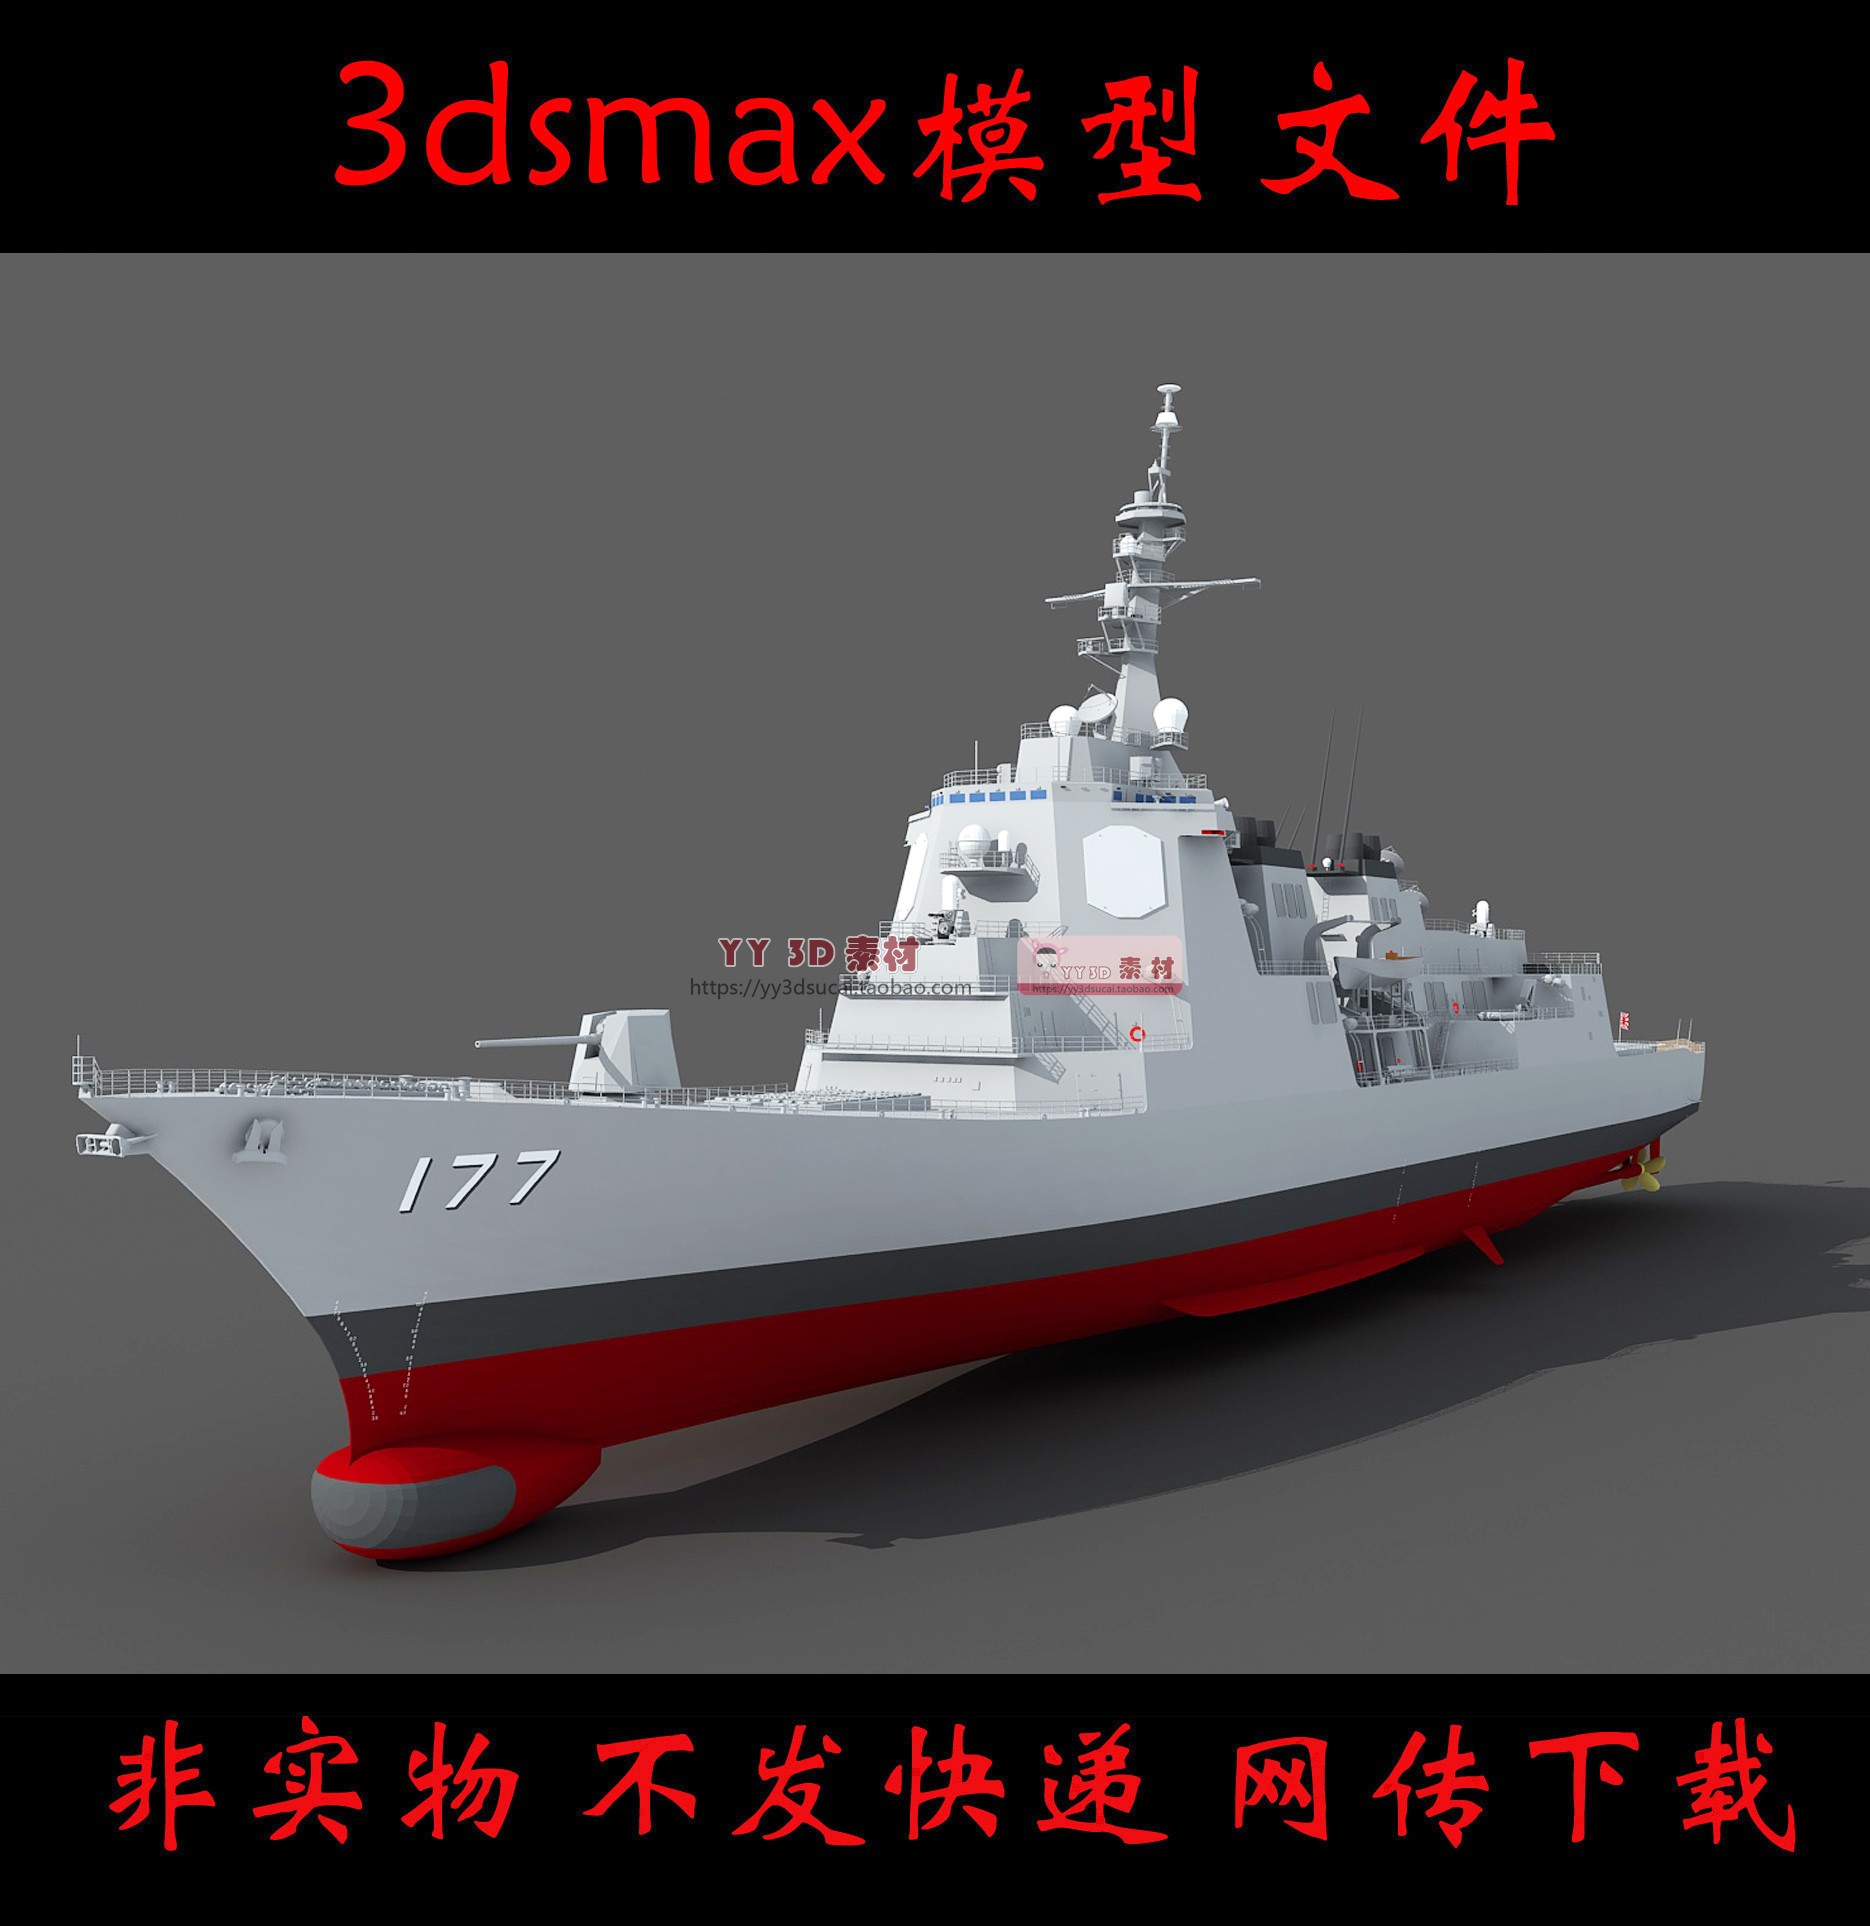 【m0426】爱宕级驱逐舰3dmax模型爱宕号驱逐舰3d模型日本军舰max